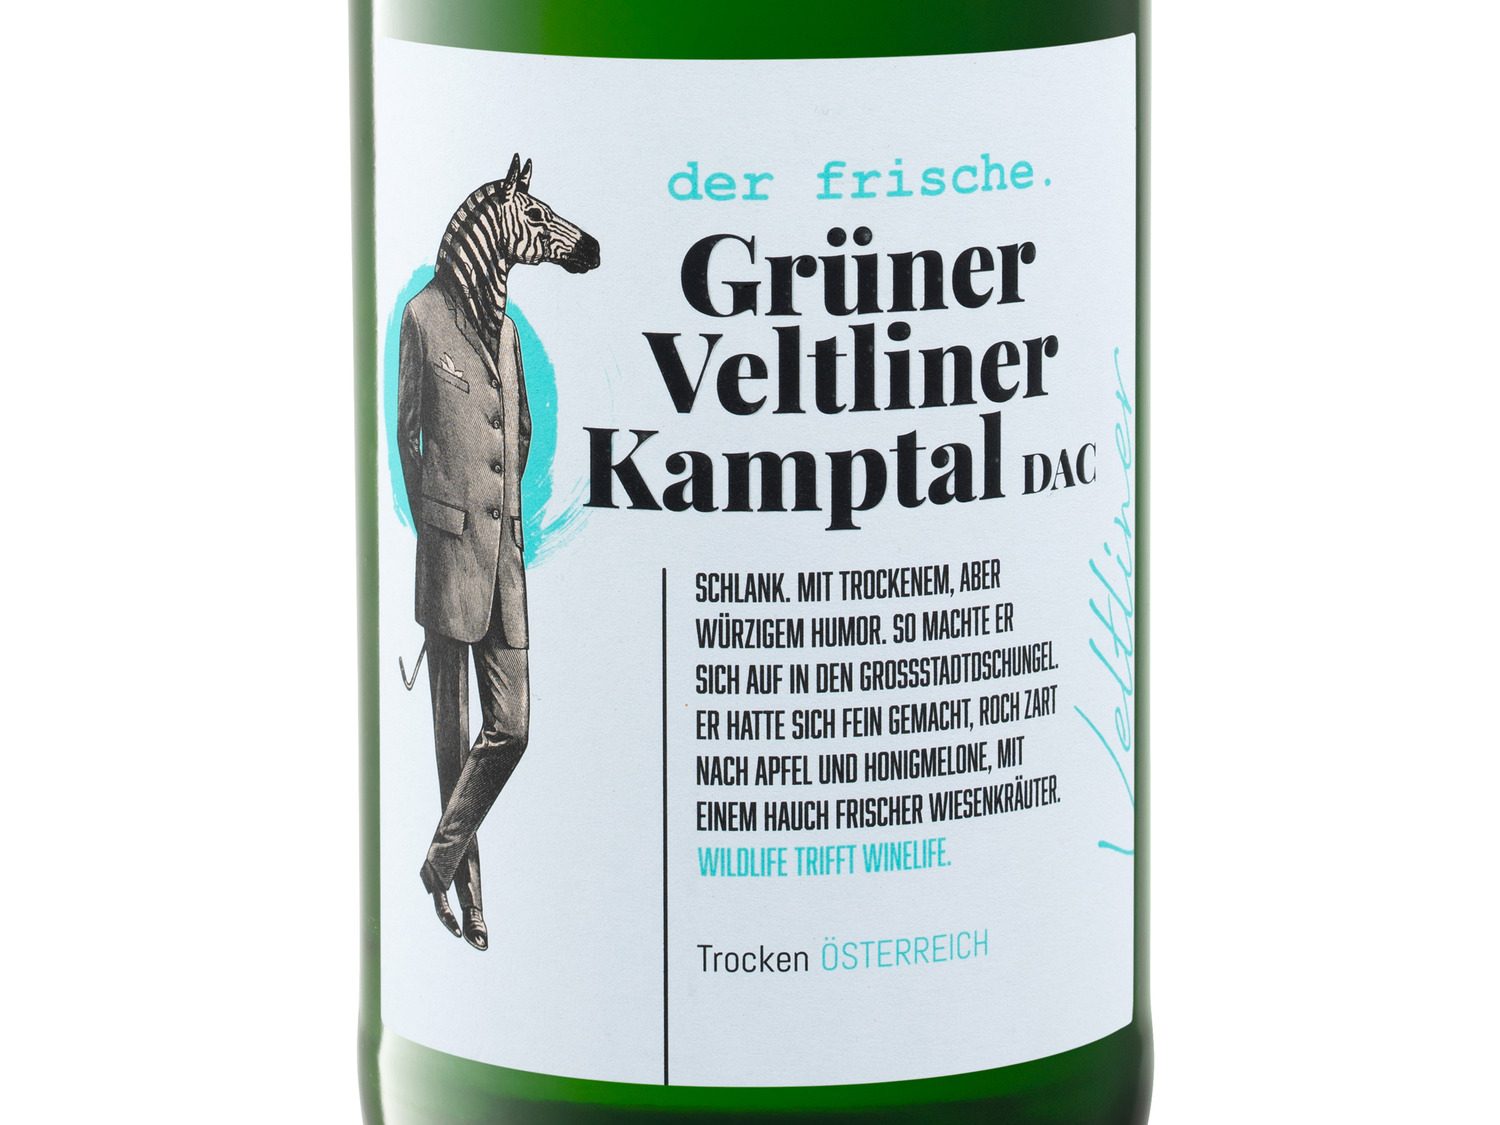 DAC Veltliner Grüner Weißwein 2022 Kamptal trocken,